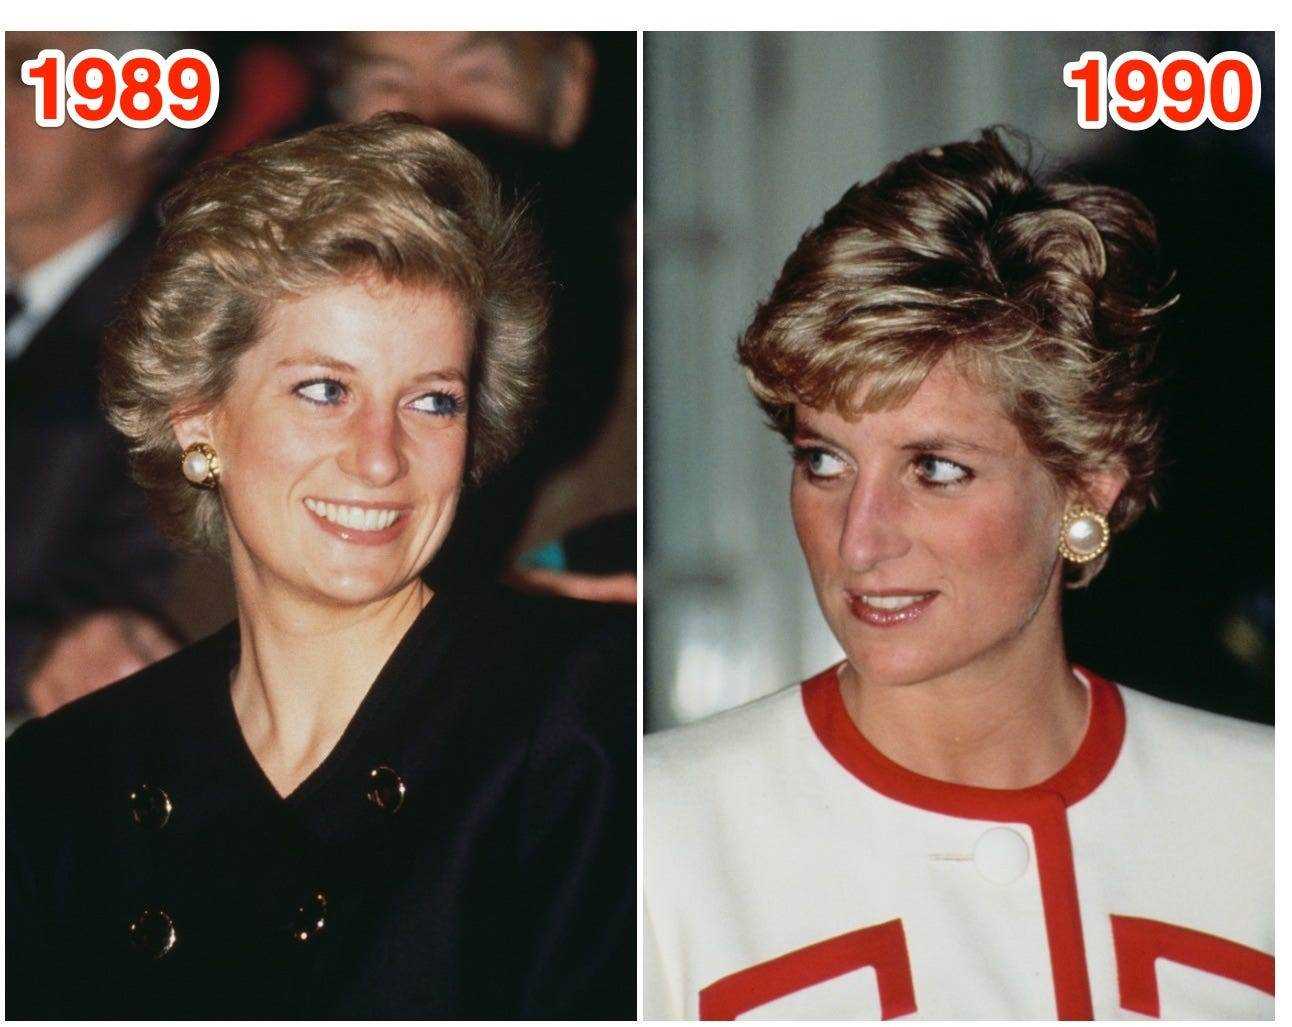 Prinzessin Diana von Wales 1989 (links) und 1990 (rechts).